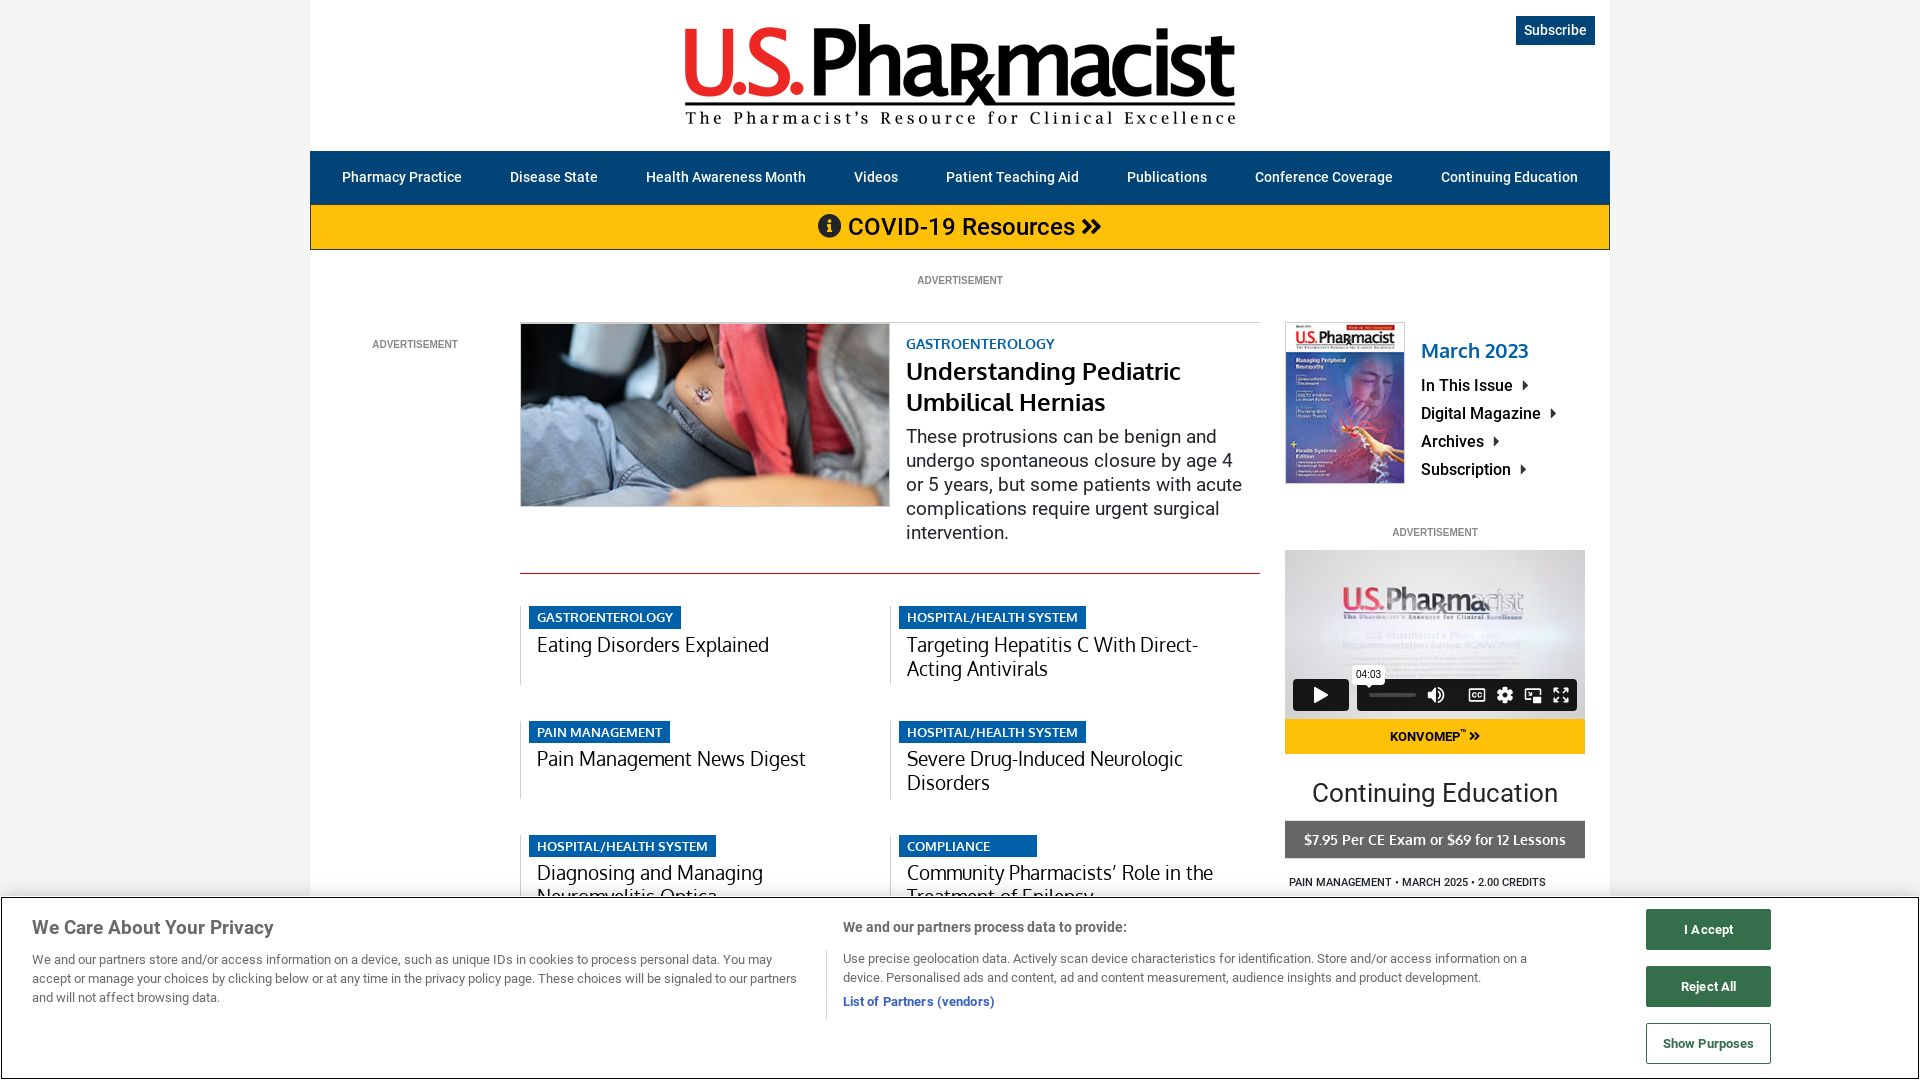 Website status uspharmacist.com is   ONLINE